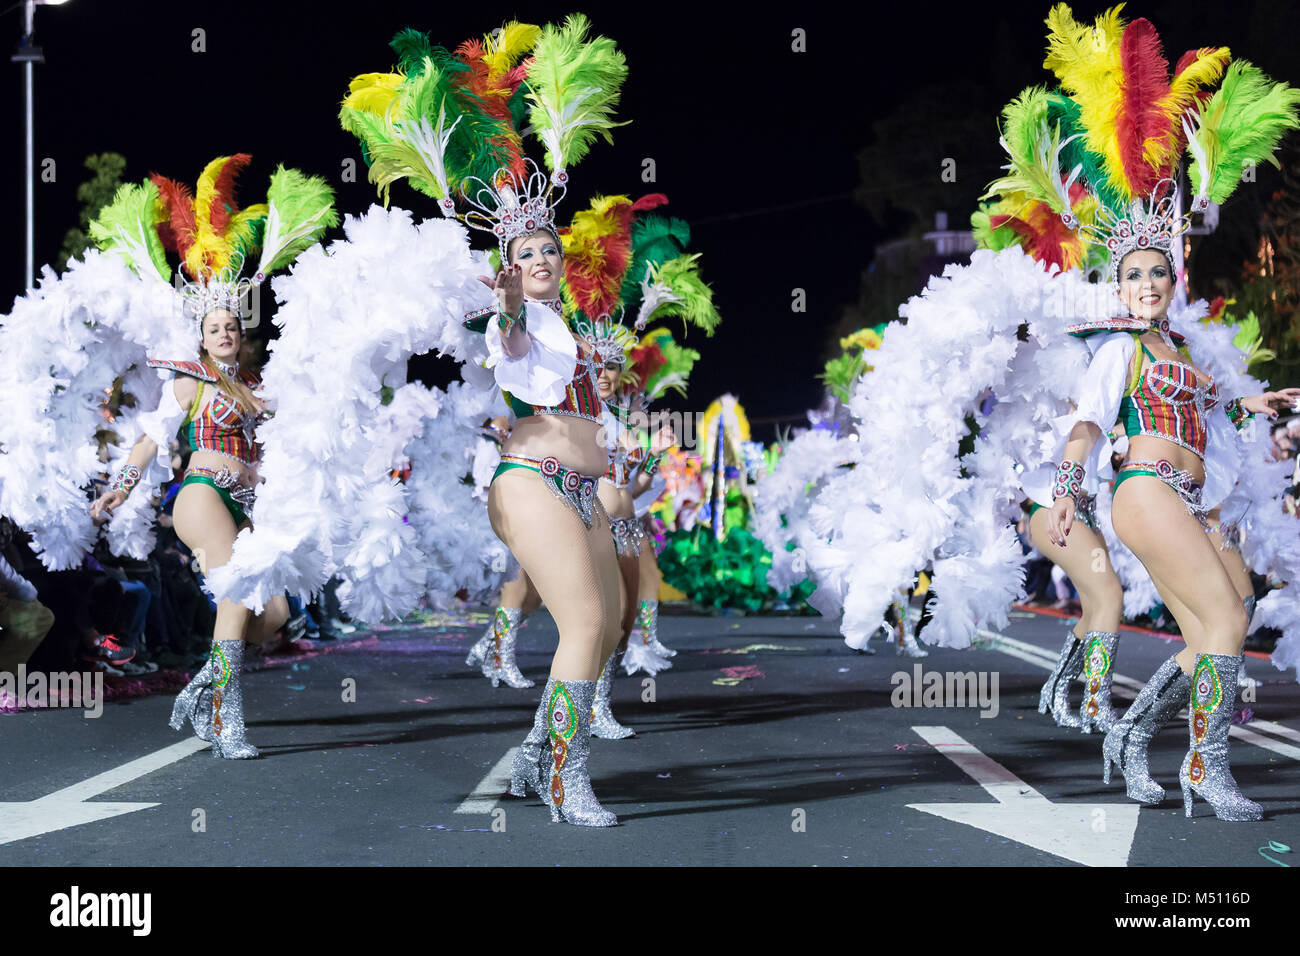 FUNCHAL, Portugal - 9 de febrero de 2018: participantes de la isla de Madeira el carnaval bailando en el desfile en la ciudad de Funchal, Madeira, Portugal. Foto de stock